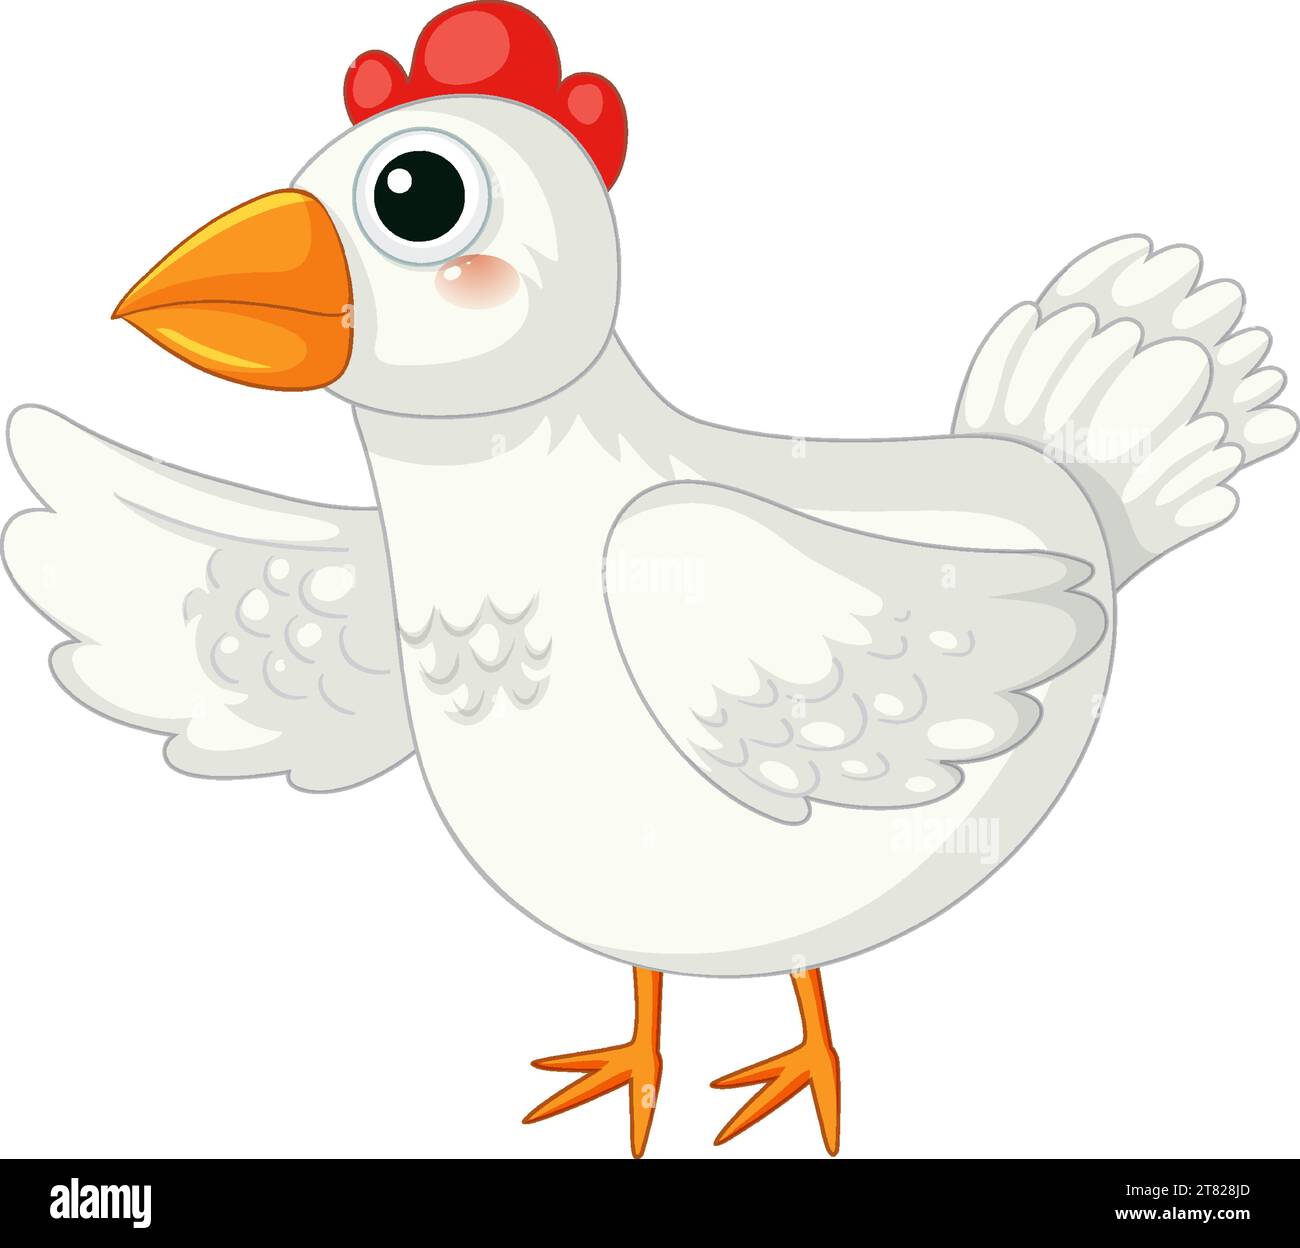 Un personnage de poulet de bande dessinée vibrant et vivant debout dans une illustration vectorielle Illustration de Vecteur